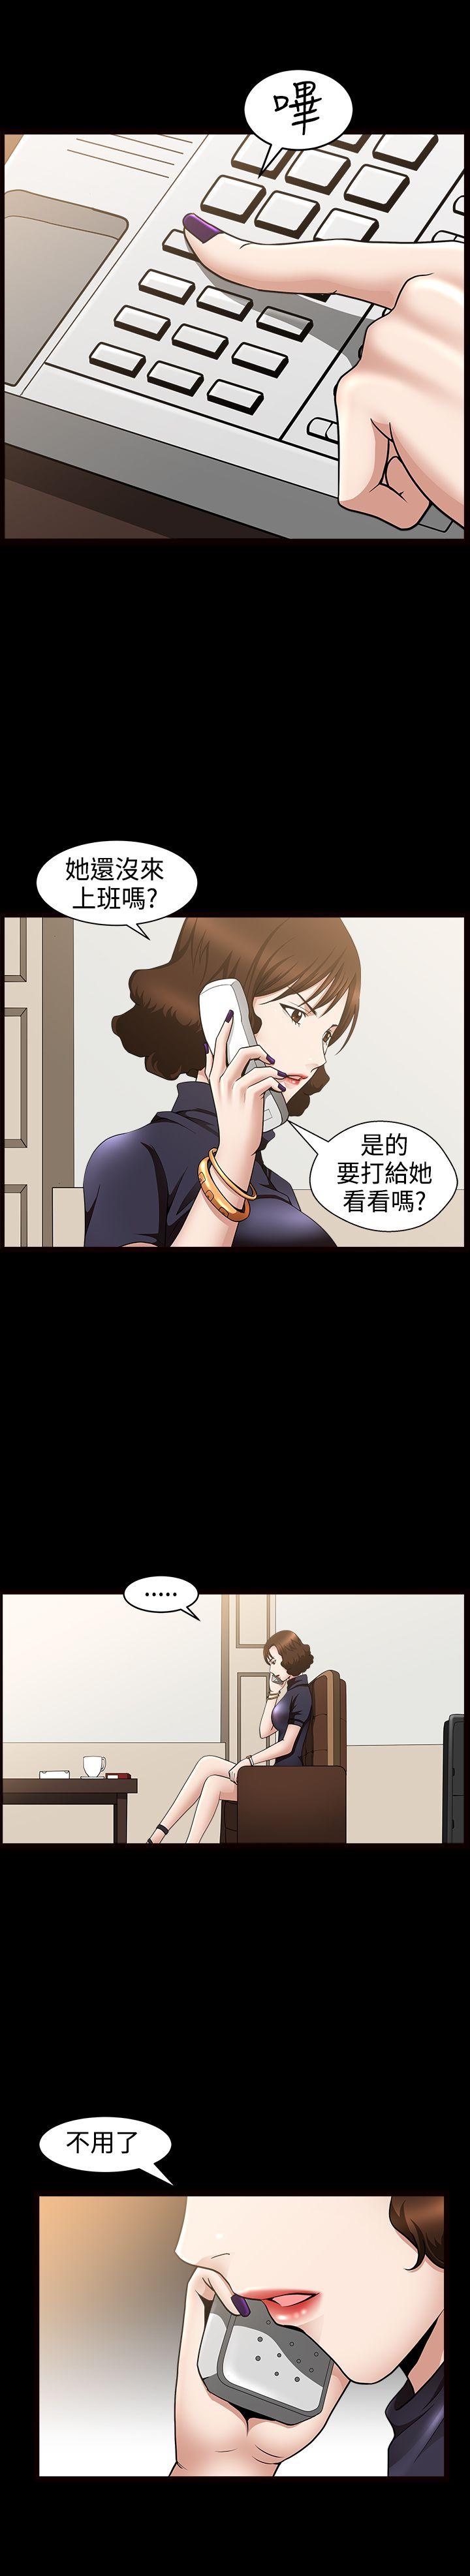 韩国污漫画 人妻性解放3:粗糙的手 第33话 23